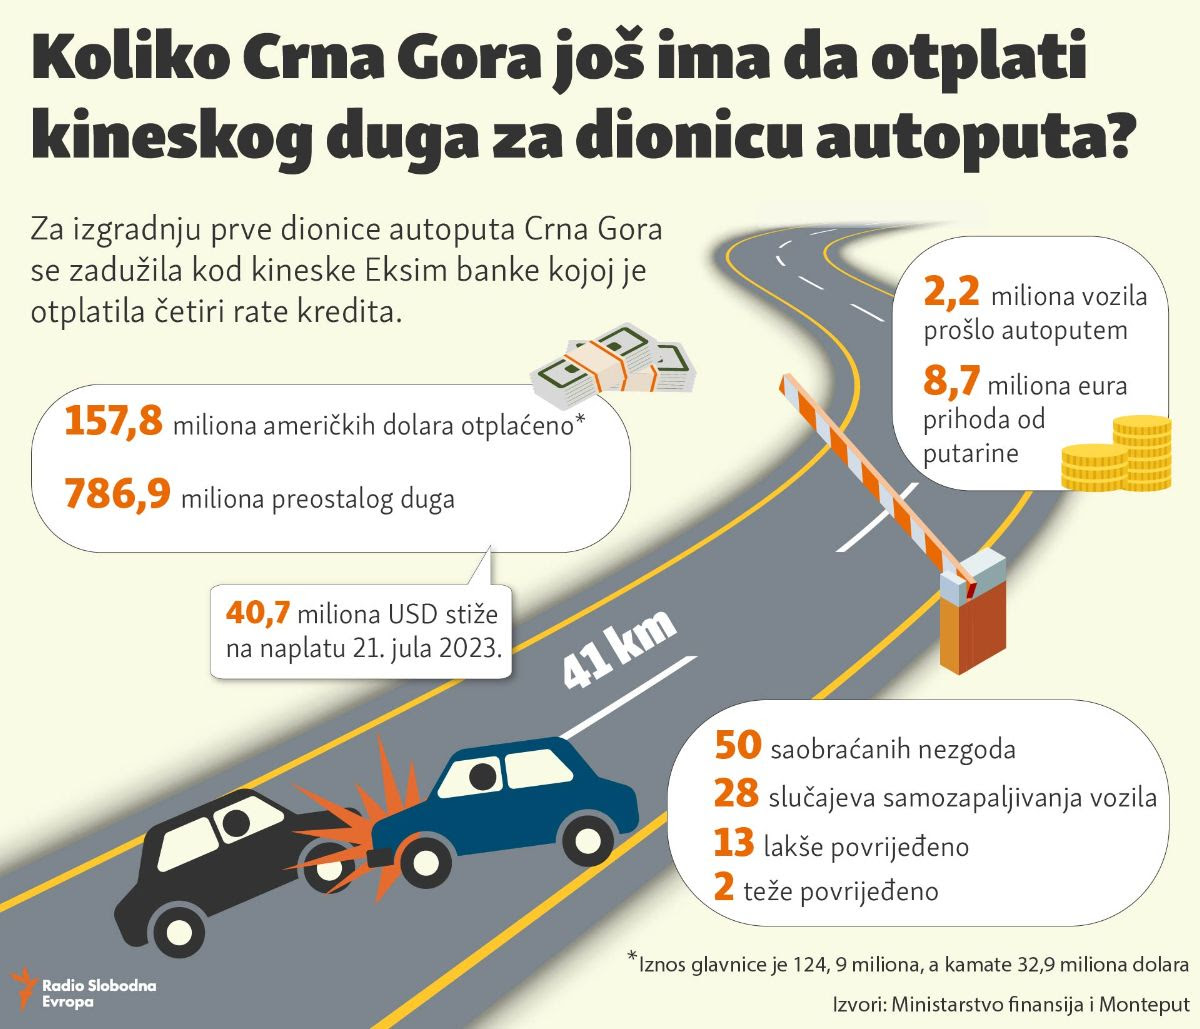 Uskoro dospijeva nova rata: Koliko Crna Gora još ima da otplati kineskog kredita za dionicu auto – puta?